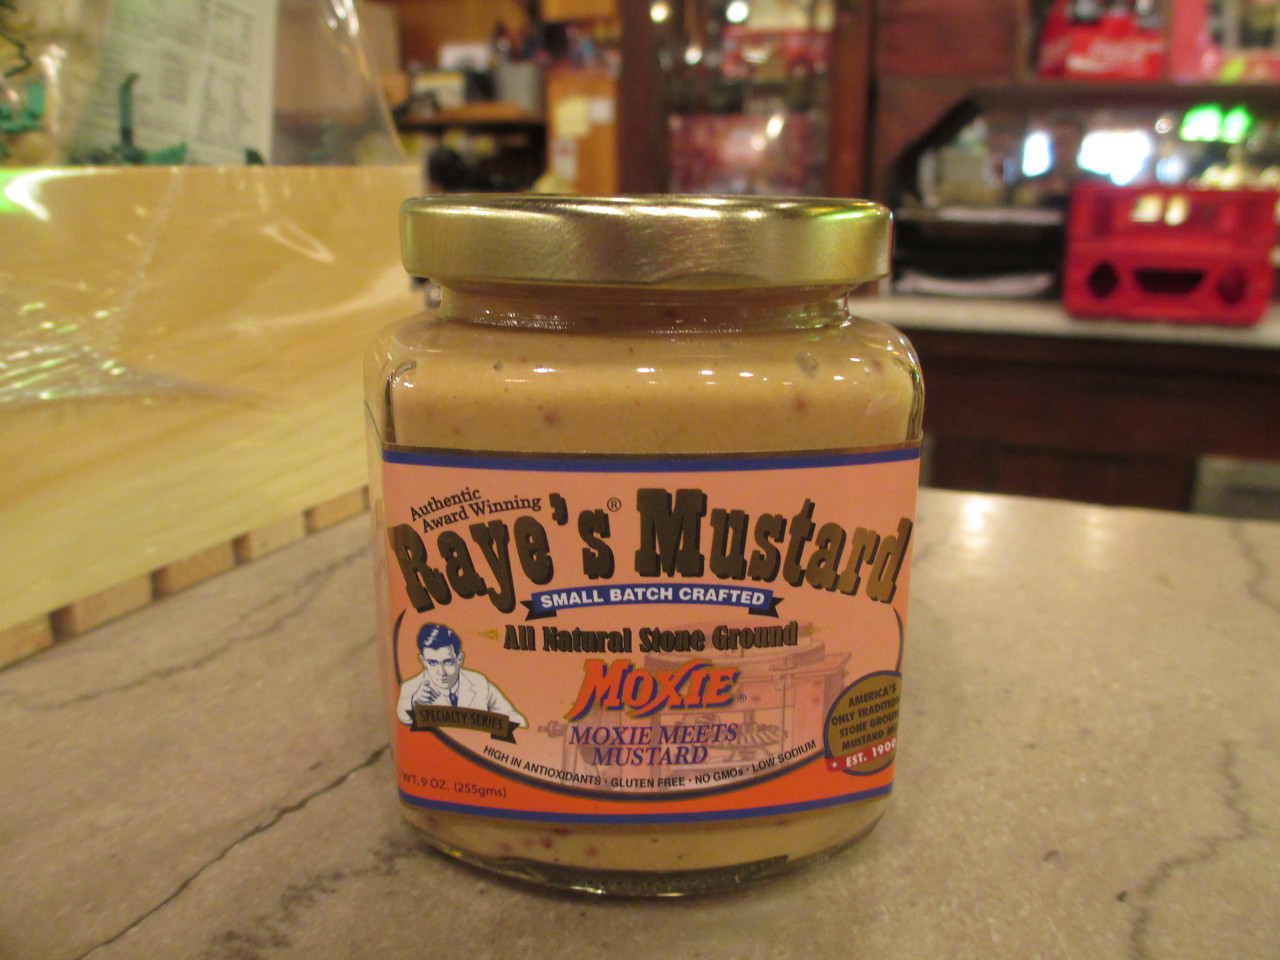 Raye's Mustard wholesale products